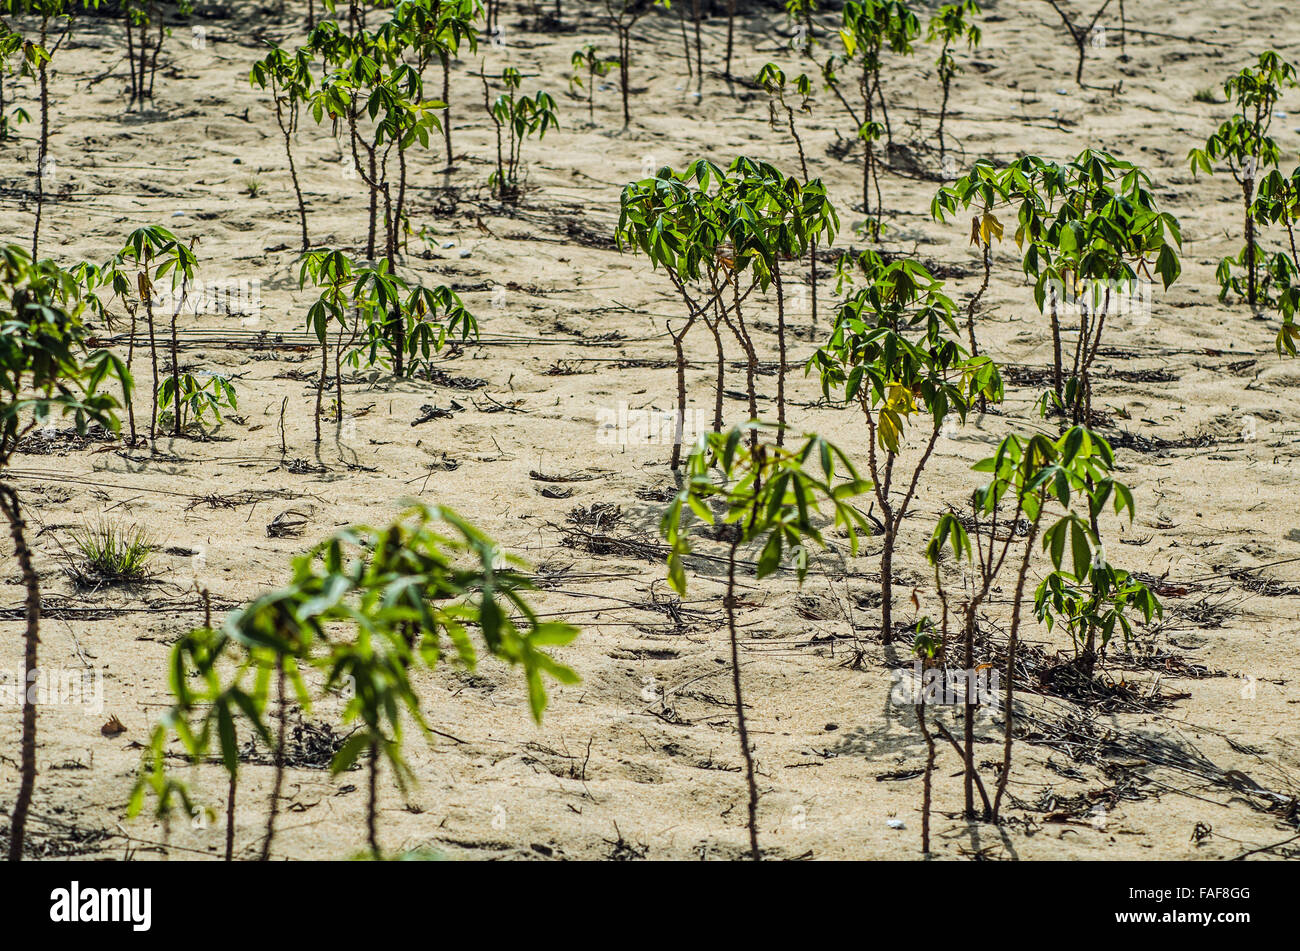 Plantas de yuca crece en suelos arenosos en las Islas de la tortuga, Sierra Leona. Foto de stock